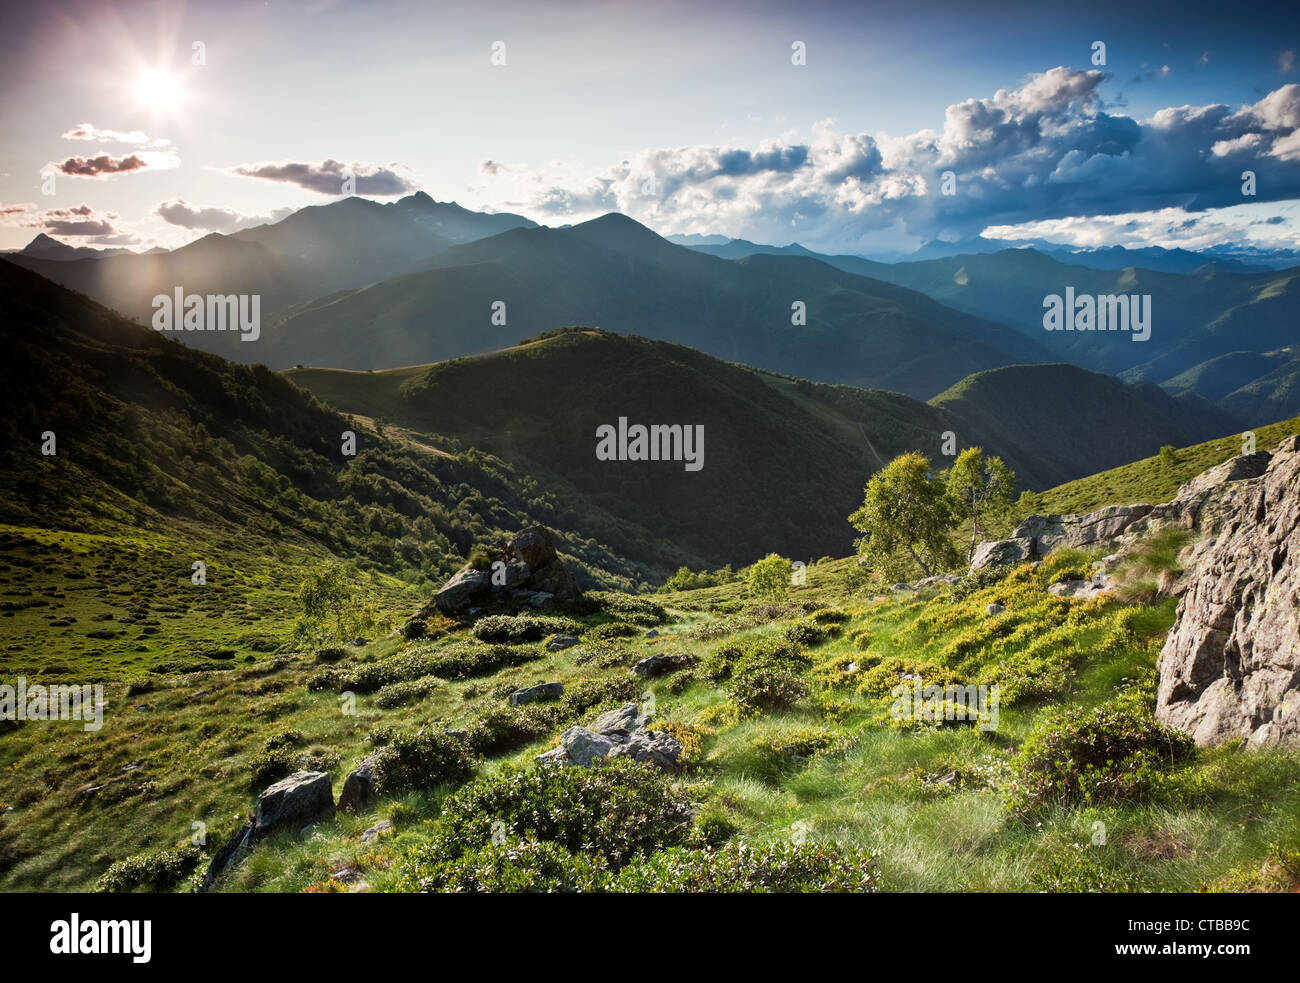 Mountain landscape, summer season, horizontal orientation. Italian alps Stock Photo